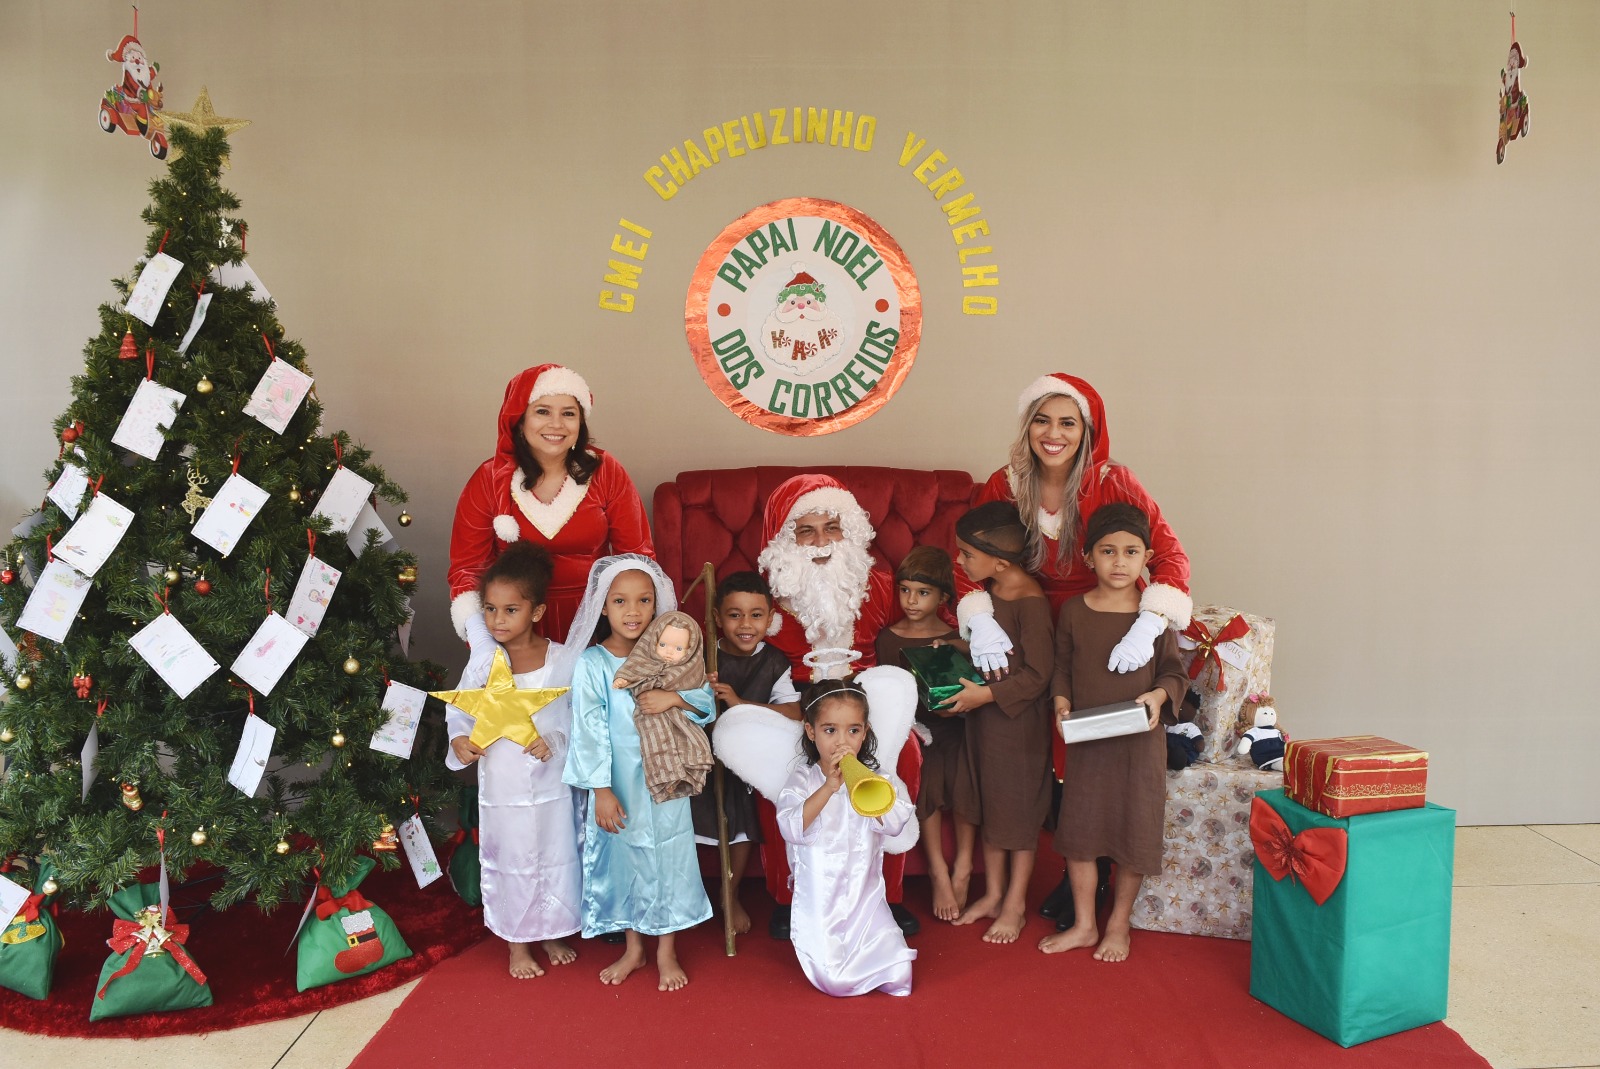 Ação solidária 'Papai Noel dos Correios' é lançada no Tocantins; saiba como participar